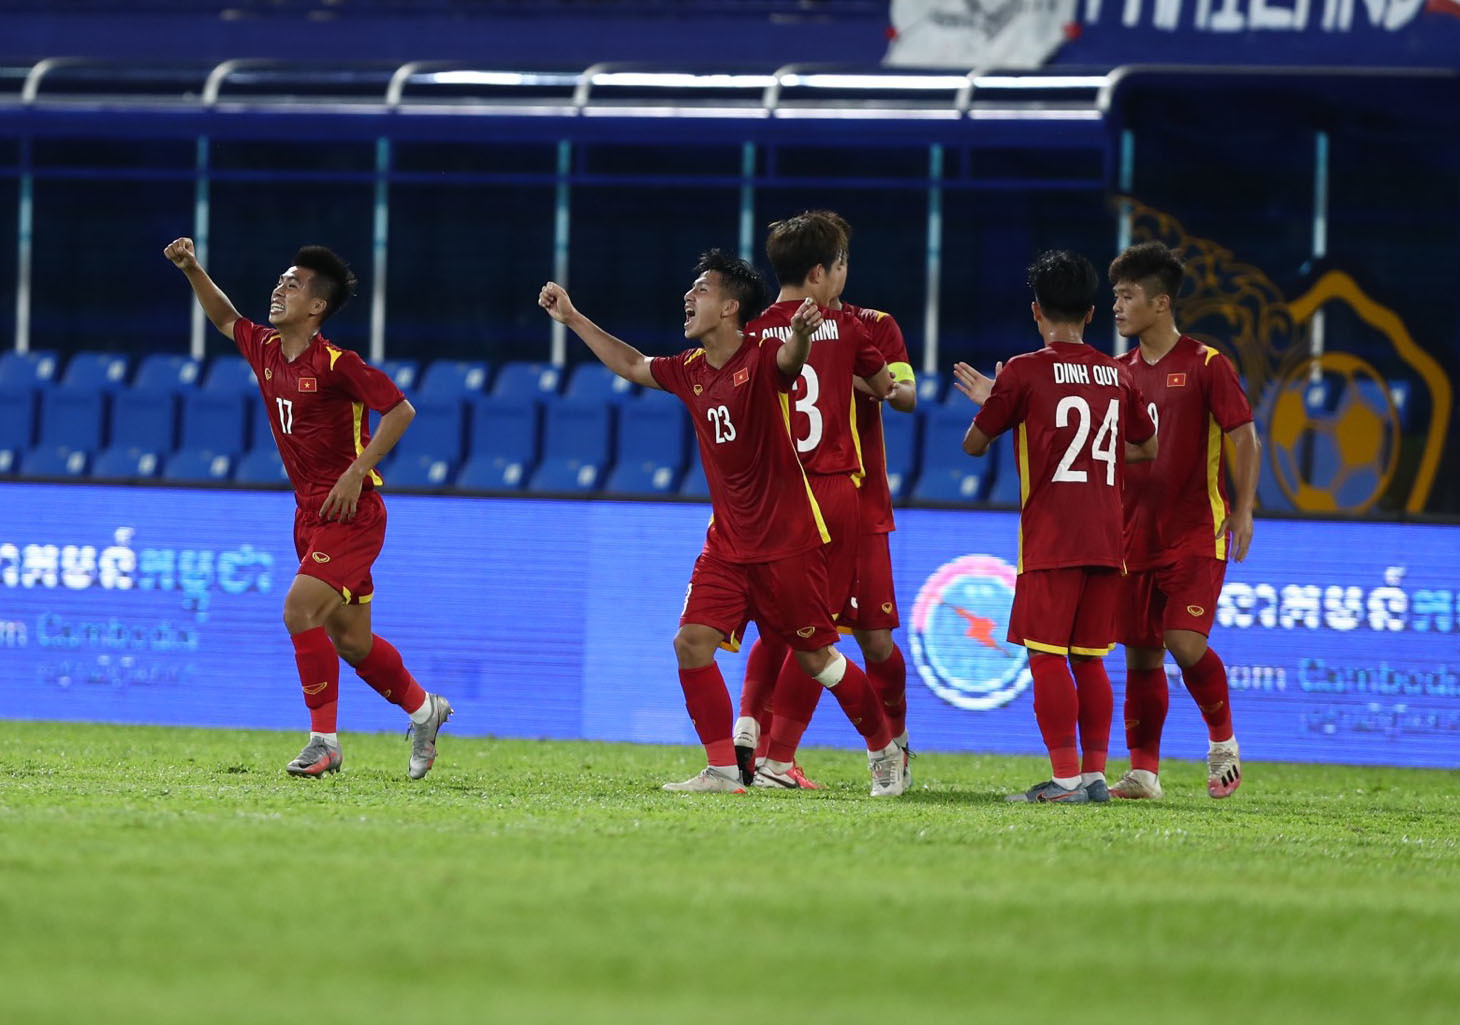 để việc đánh bại U23 Thái Lan thực sự bất ngờ, nhưng hợp lý vì U23 Việt Nam quá xuất sắc